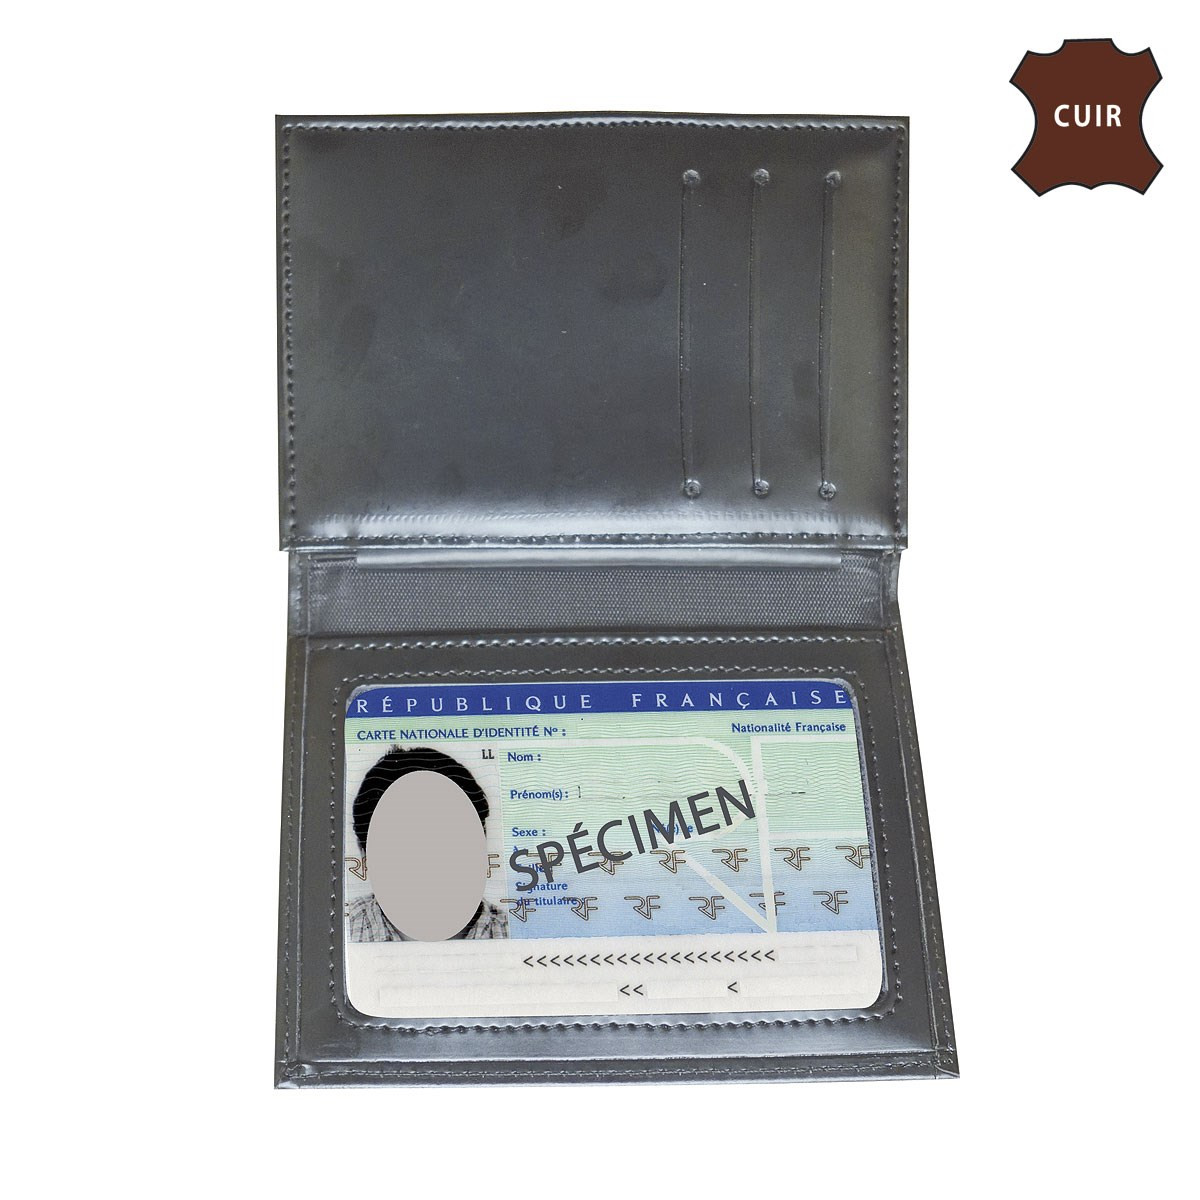 porte carte 3 volets - Identification porte cartes - Accessoires : CGSurplus